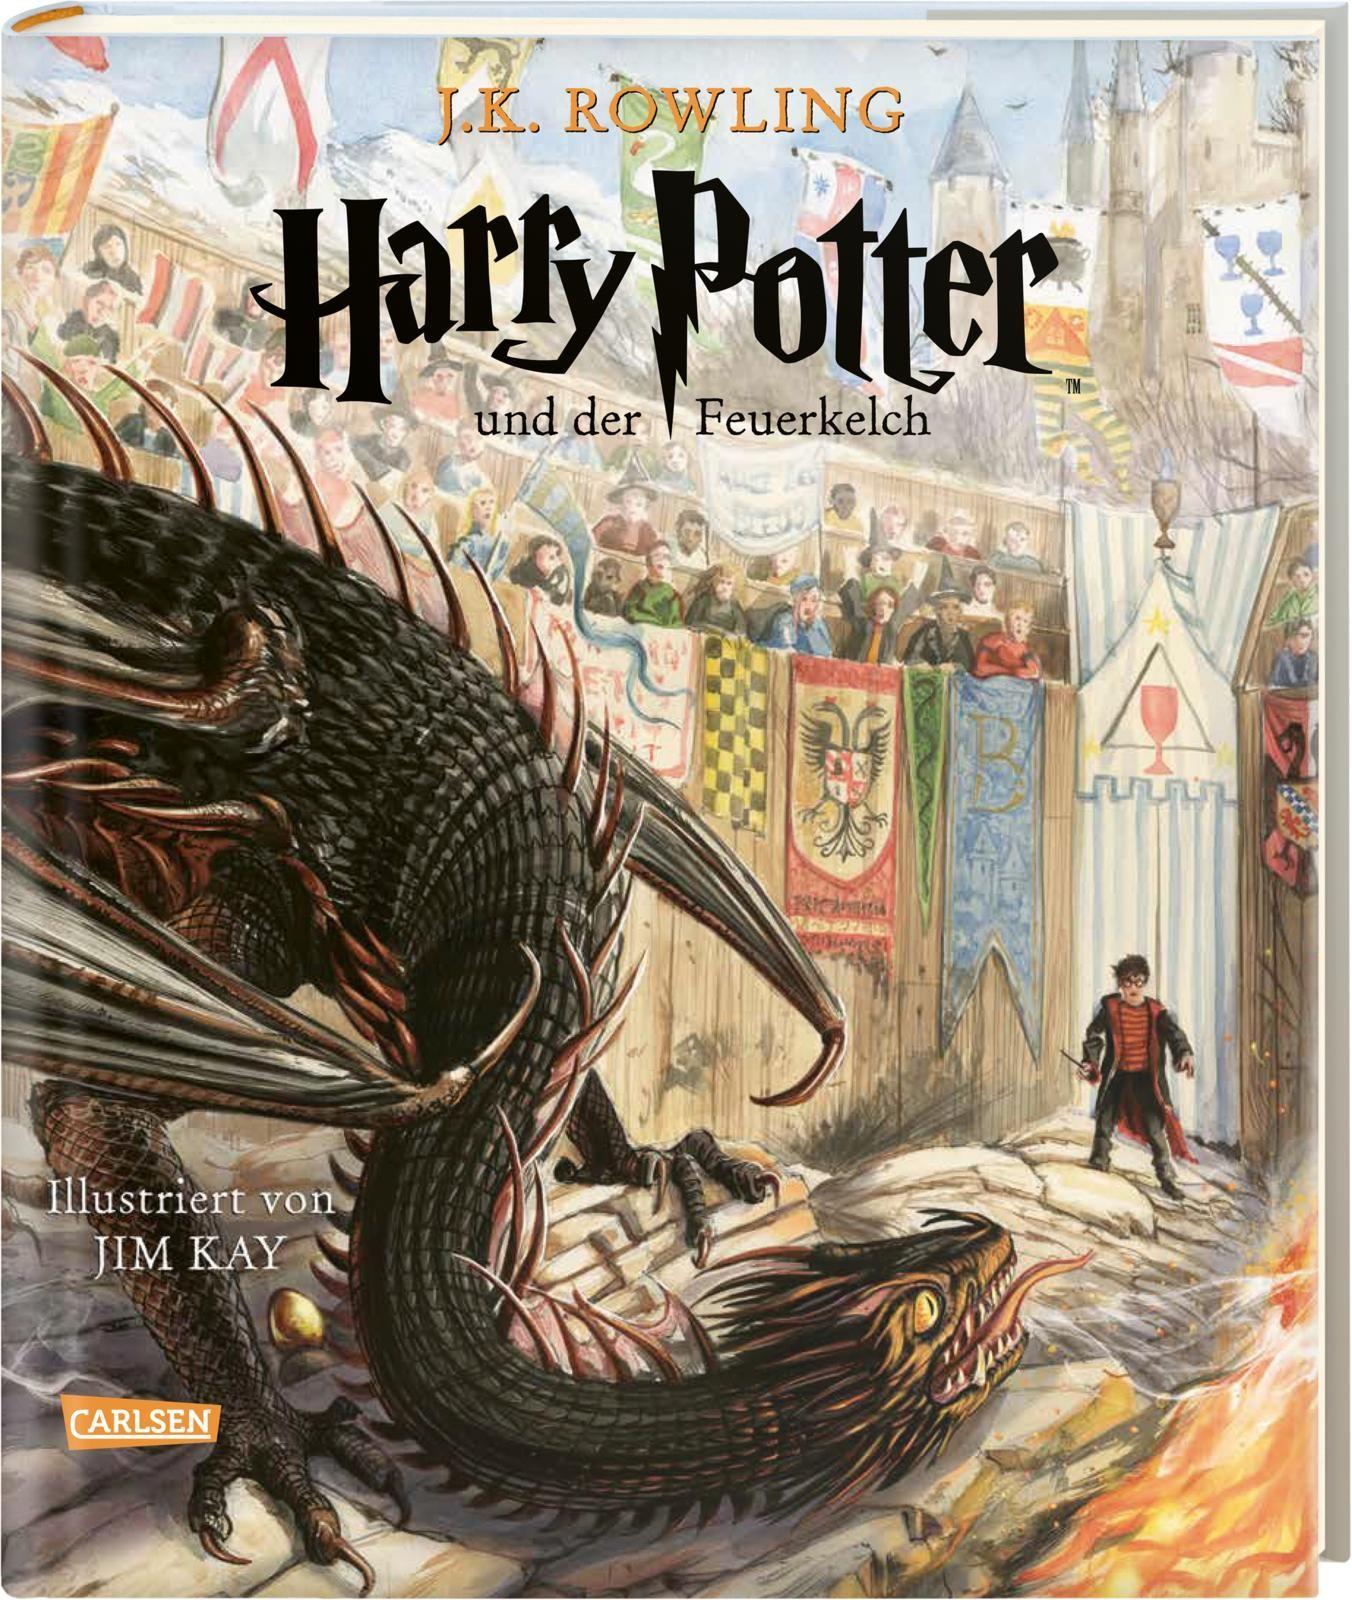 Harry Potter und der Feuerkelch (farbig illustrierte Schmuckausgabe) (Harry Potter 4) Vierfarbig illustrierte Ausgabe mit großformatigen Bildern und Lesebändchen - der Kinderbuch-Klassiker zum Vorlesen